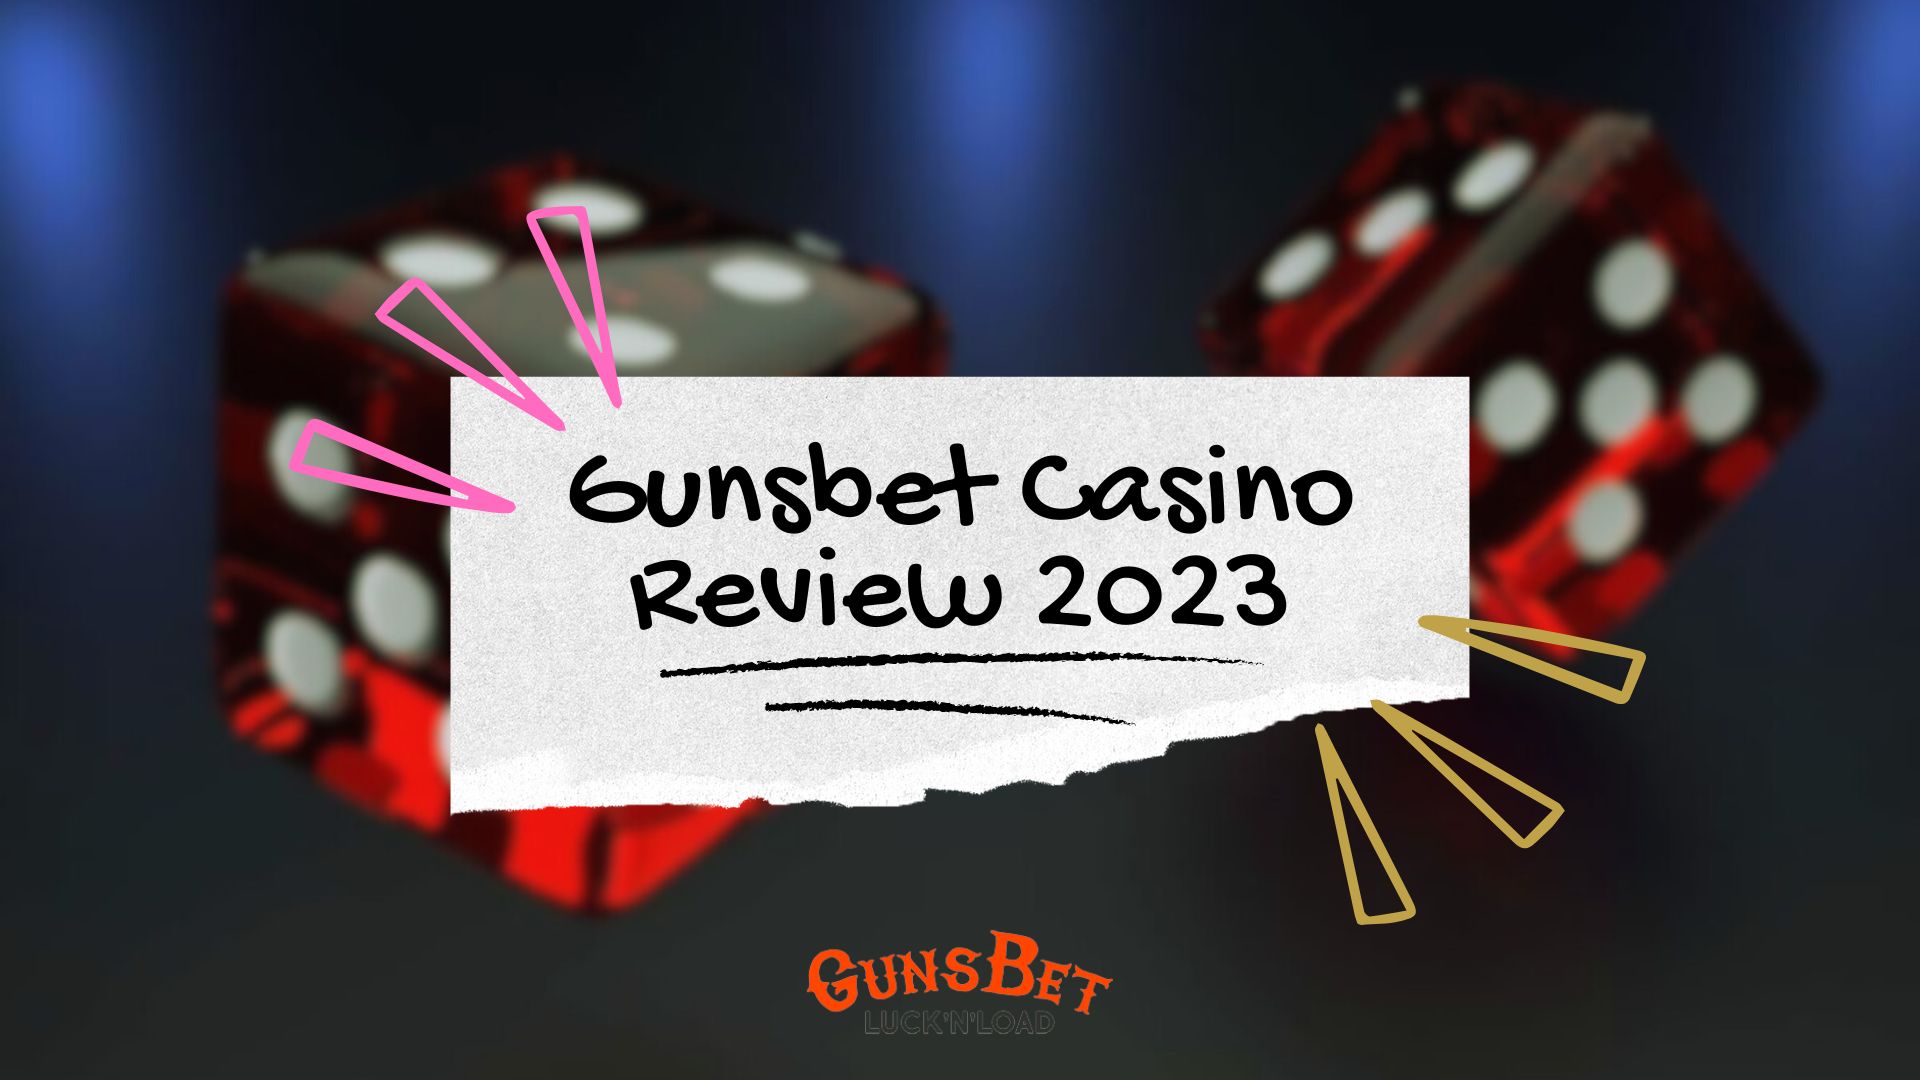 Gunsbet Casino Review 2023